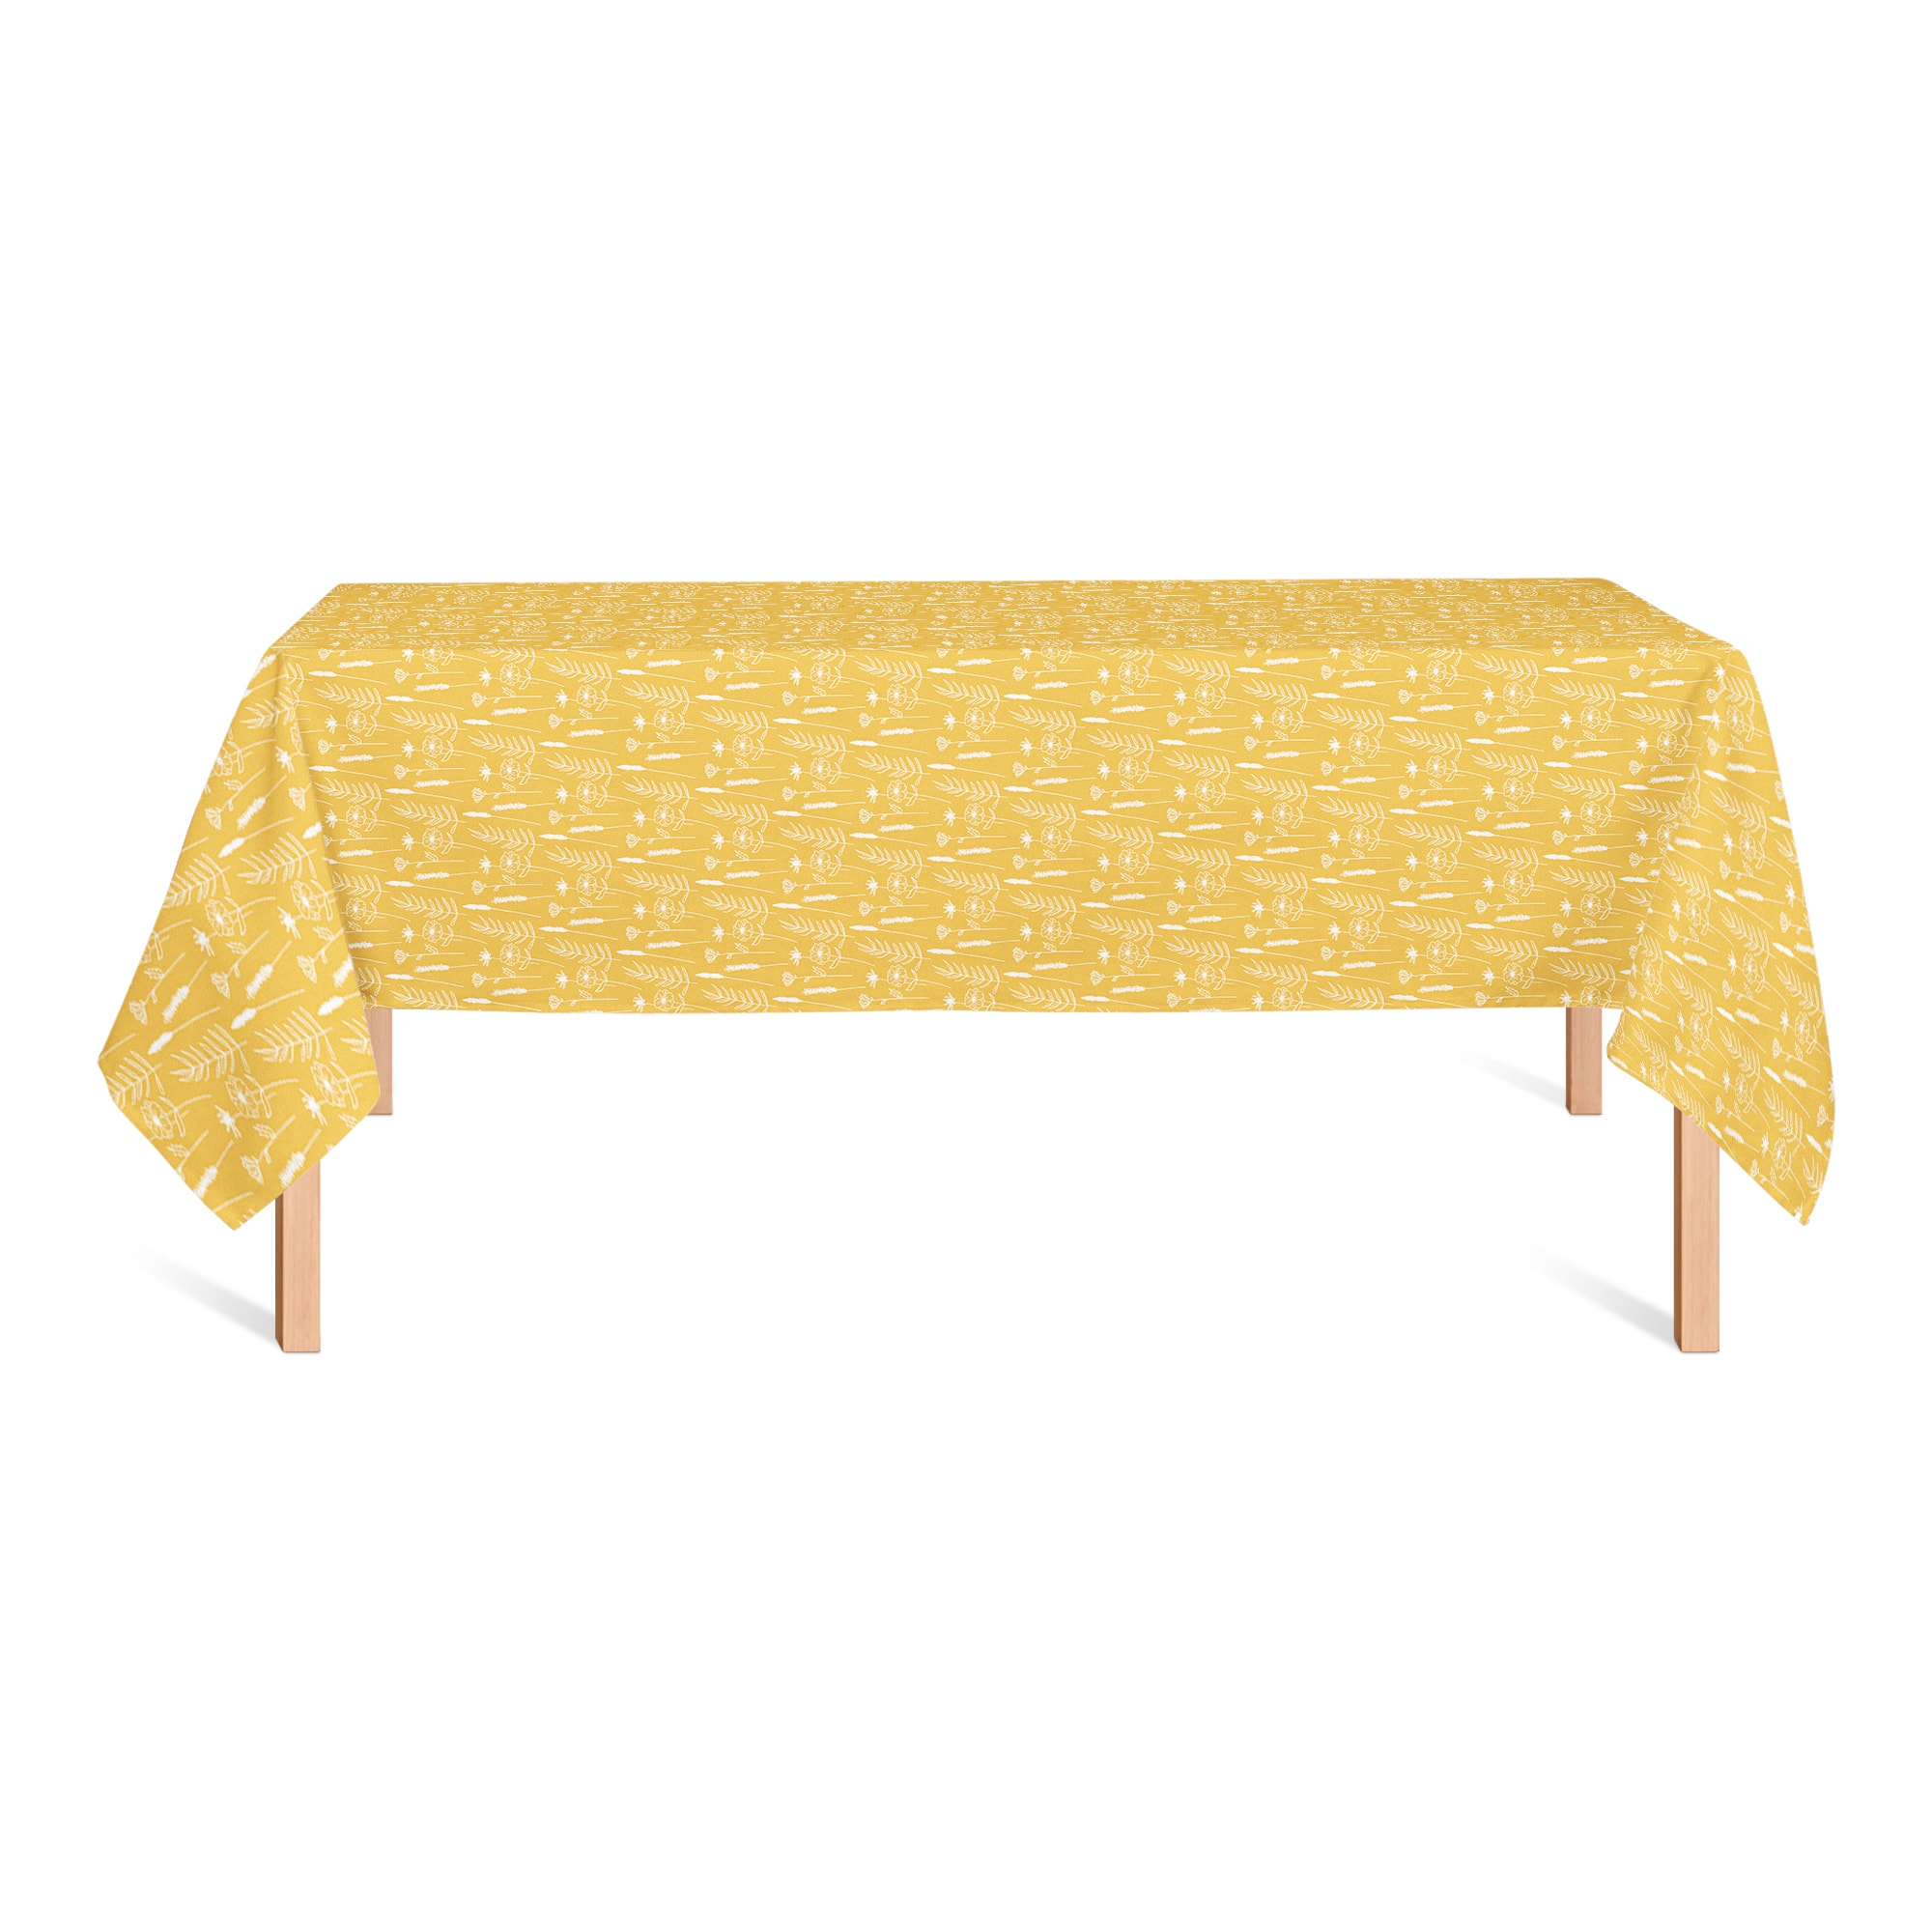 Golden Wheat Flower Tablecloth